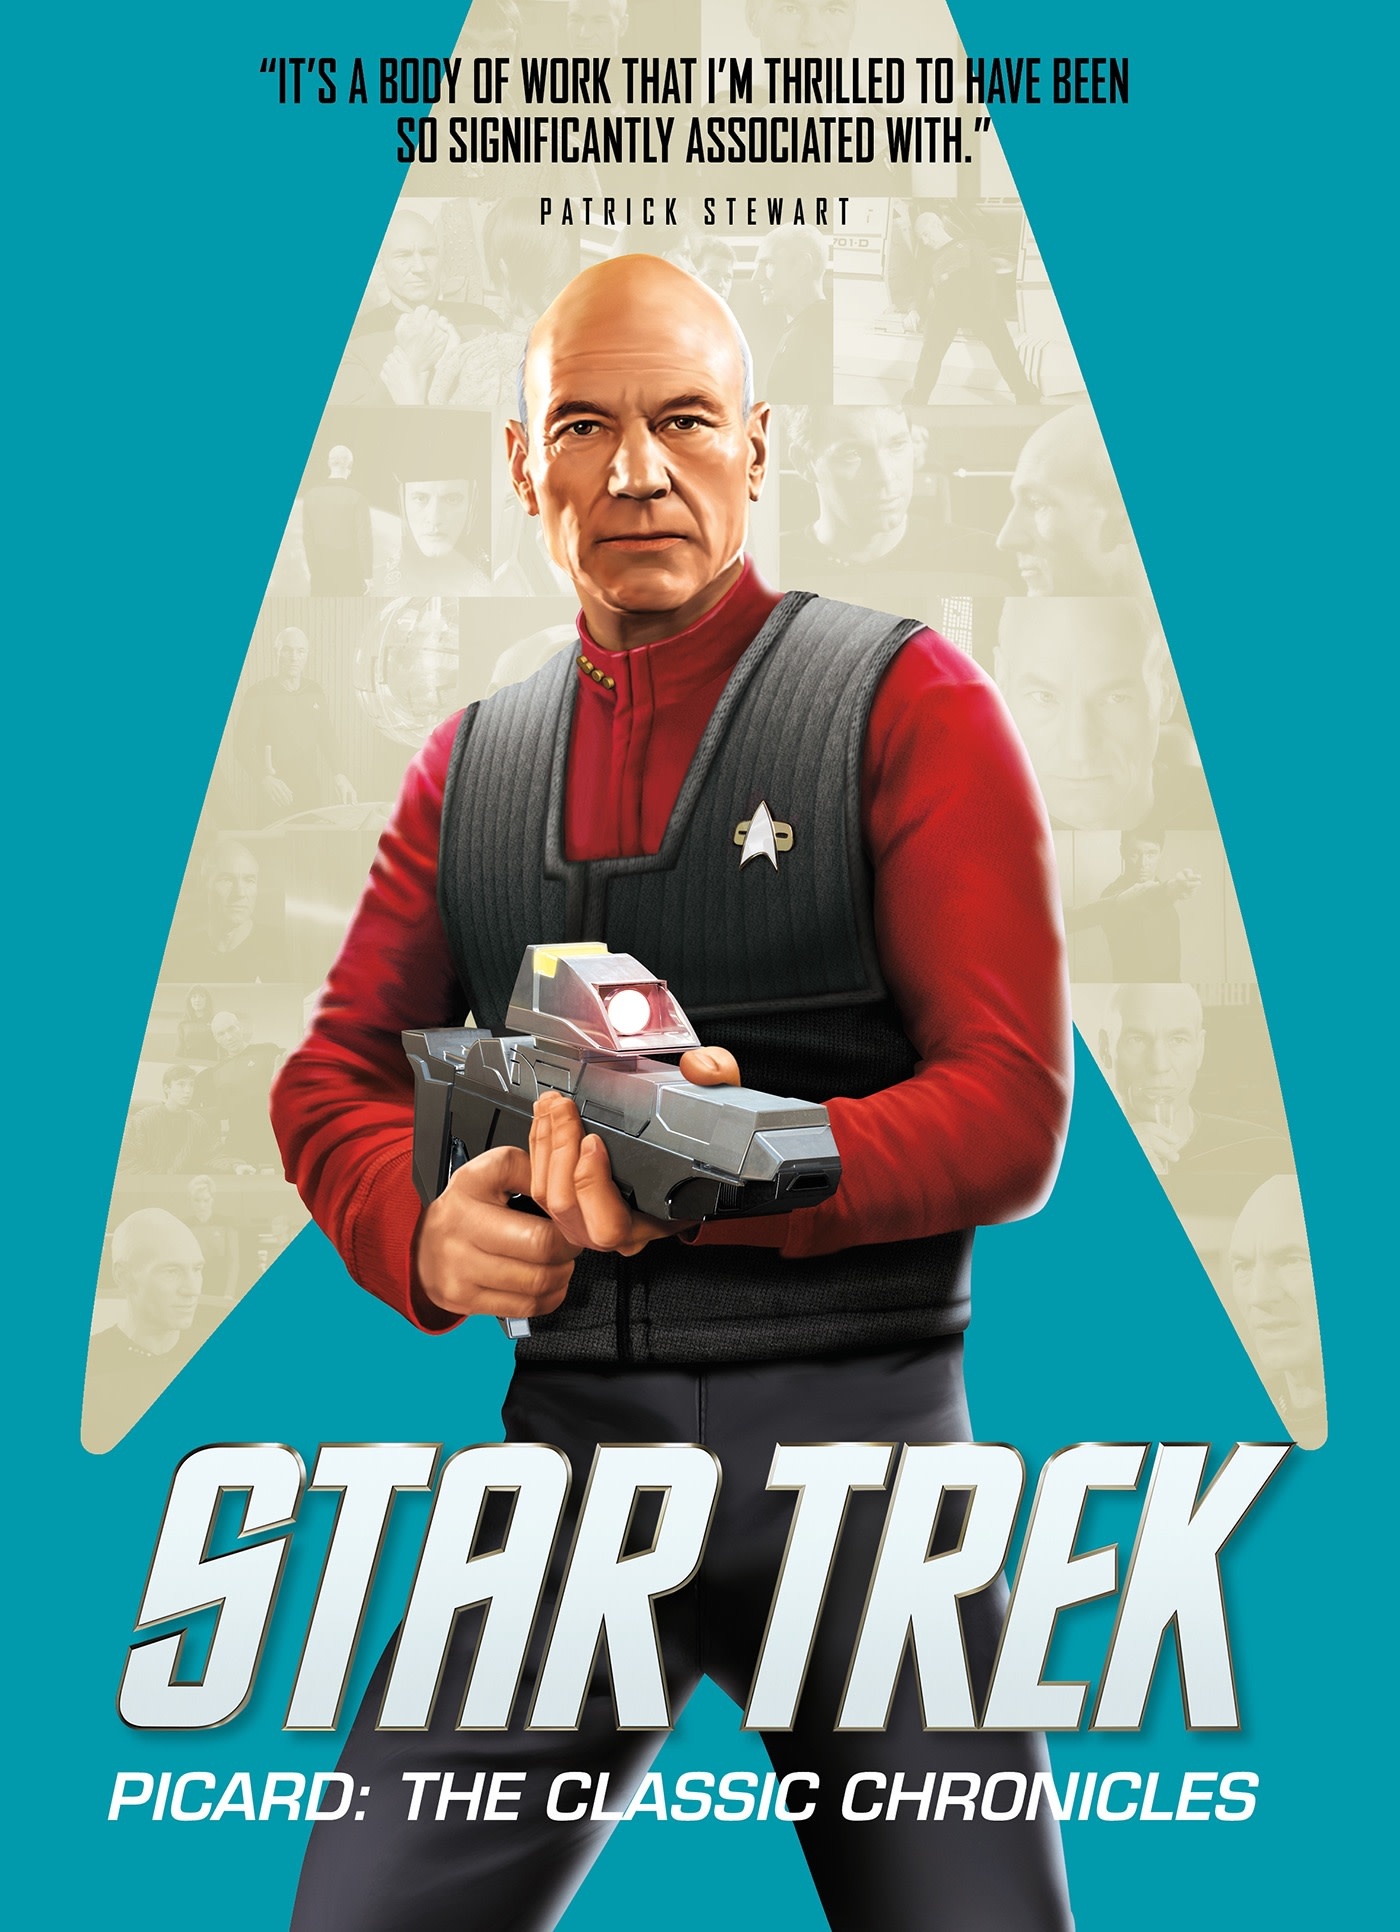 Star Trek Star Trek Picard: The Classic Chronicles